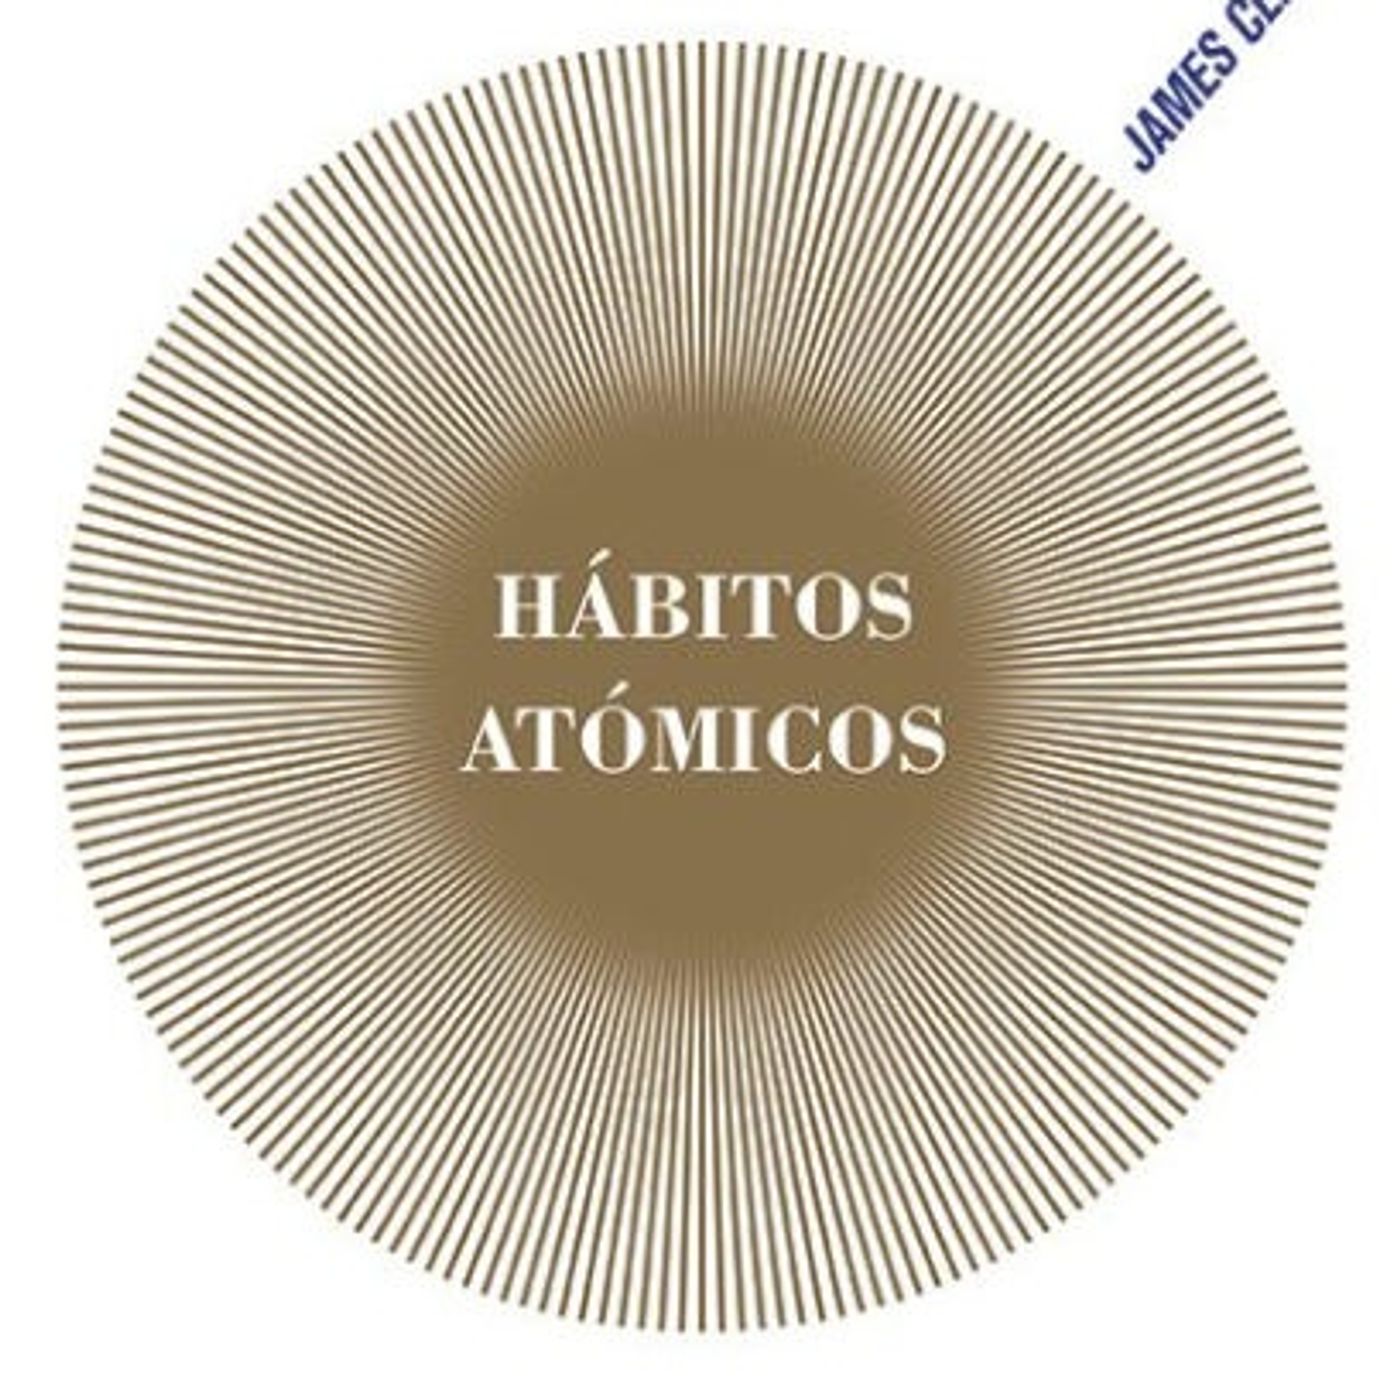 HABITOS ATOMICOS CAPITULO 5 AUDIOLIBRO